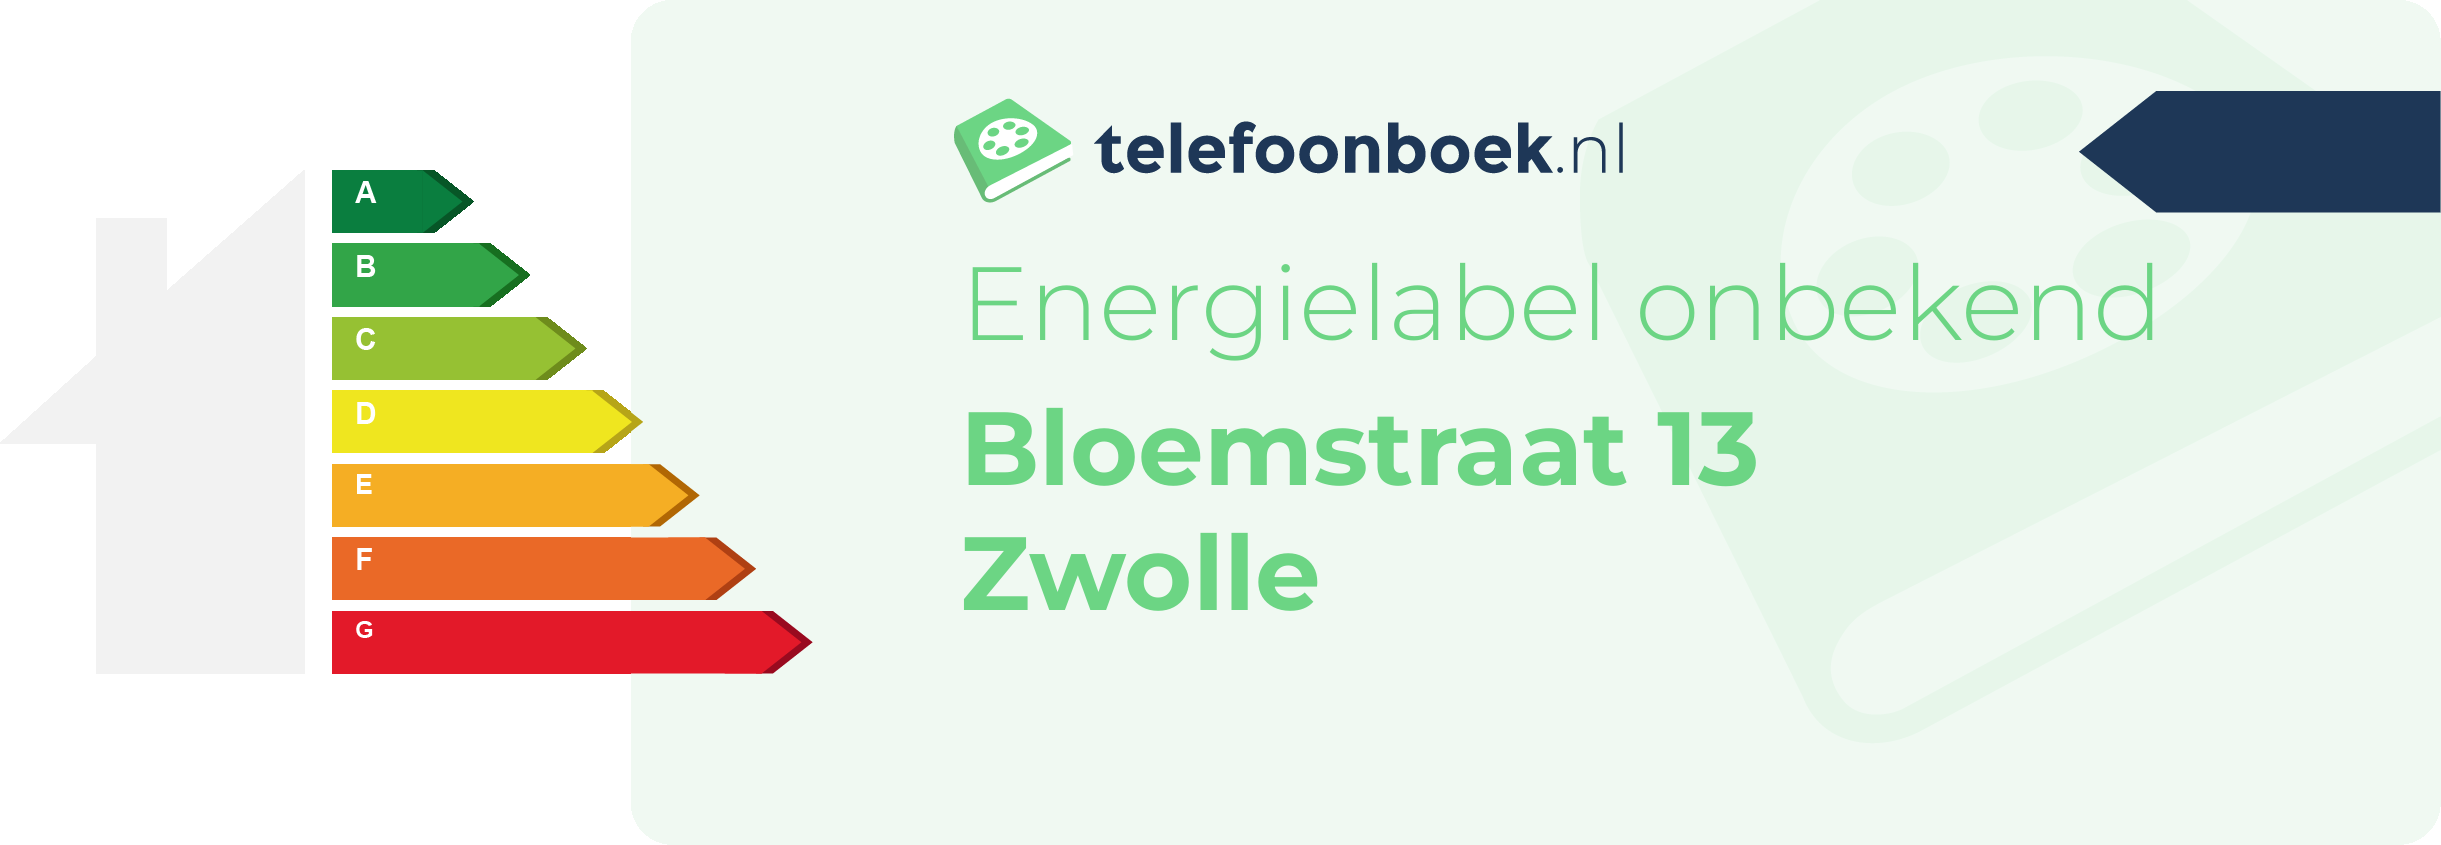 Energielabel Bloemstraat 13 Zwolle